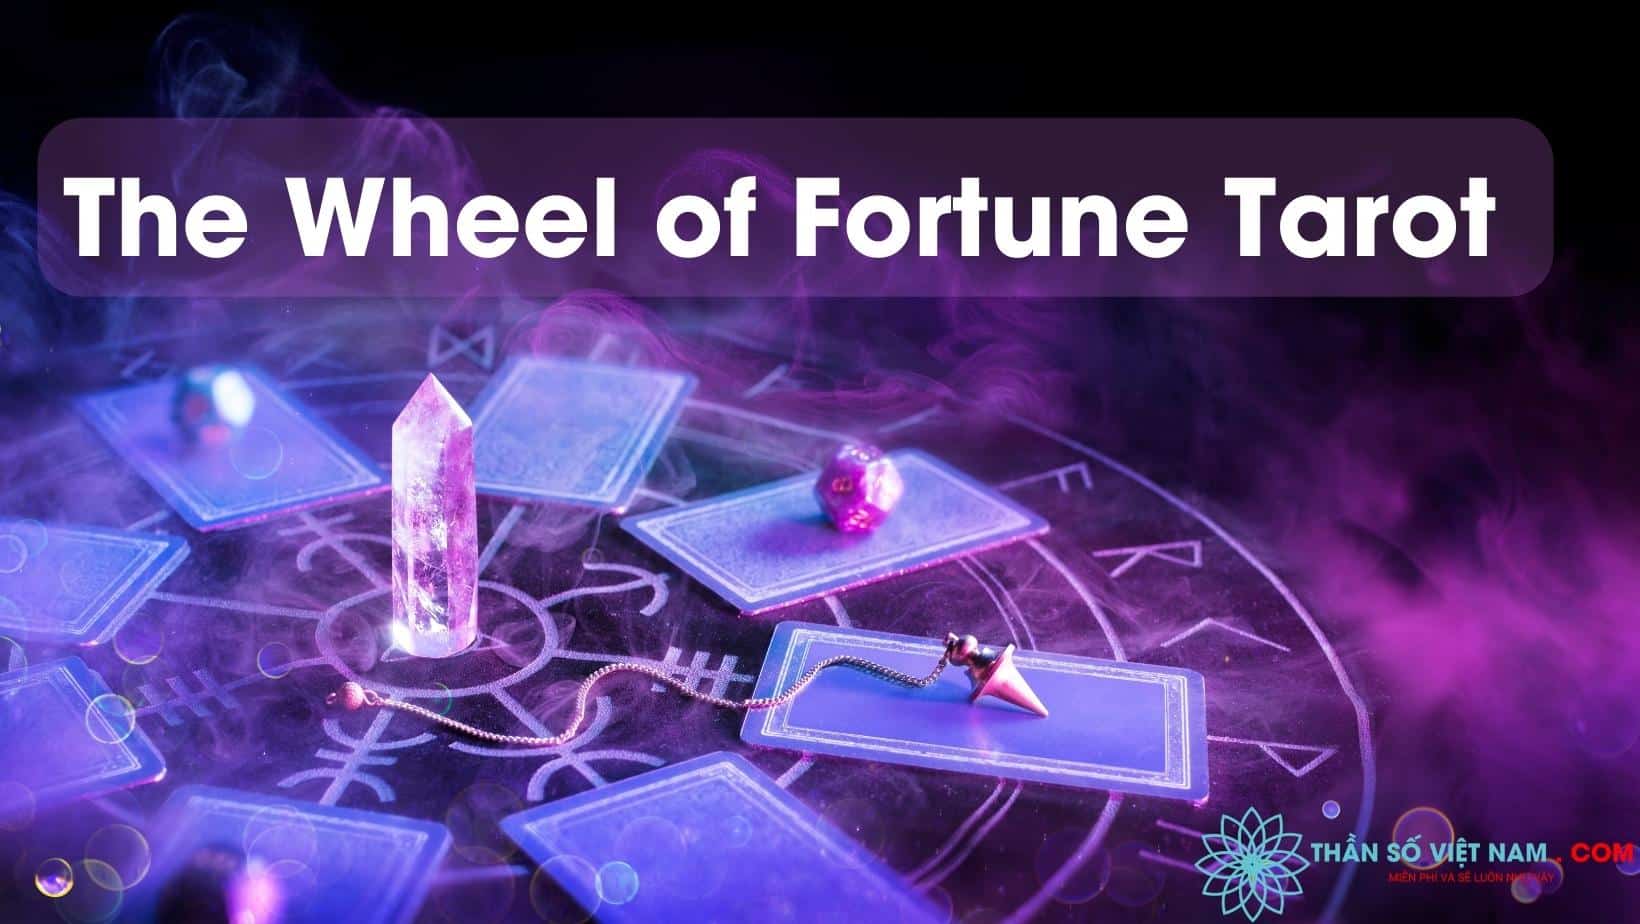 The Wheel of Fortune Tarot: Nếu bạn đang tìm kiếm ý nghĩa sâu sắc về cuộc sống, hãy nhìn vào lá bài The Wheel of Fortune Tarot. Đây là một lá bài tượng trưng cho sự thay đổi và biến động của cuộc đời. Hãy để hình ảnh này đưa bạn đến sự chấp nhận và hưởng thụ những điều mới mẻ.